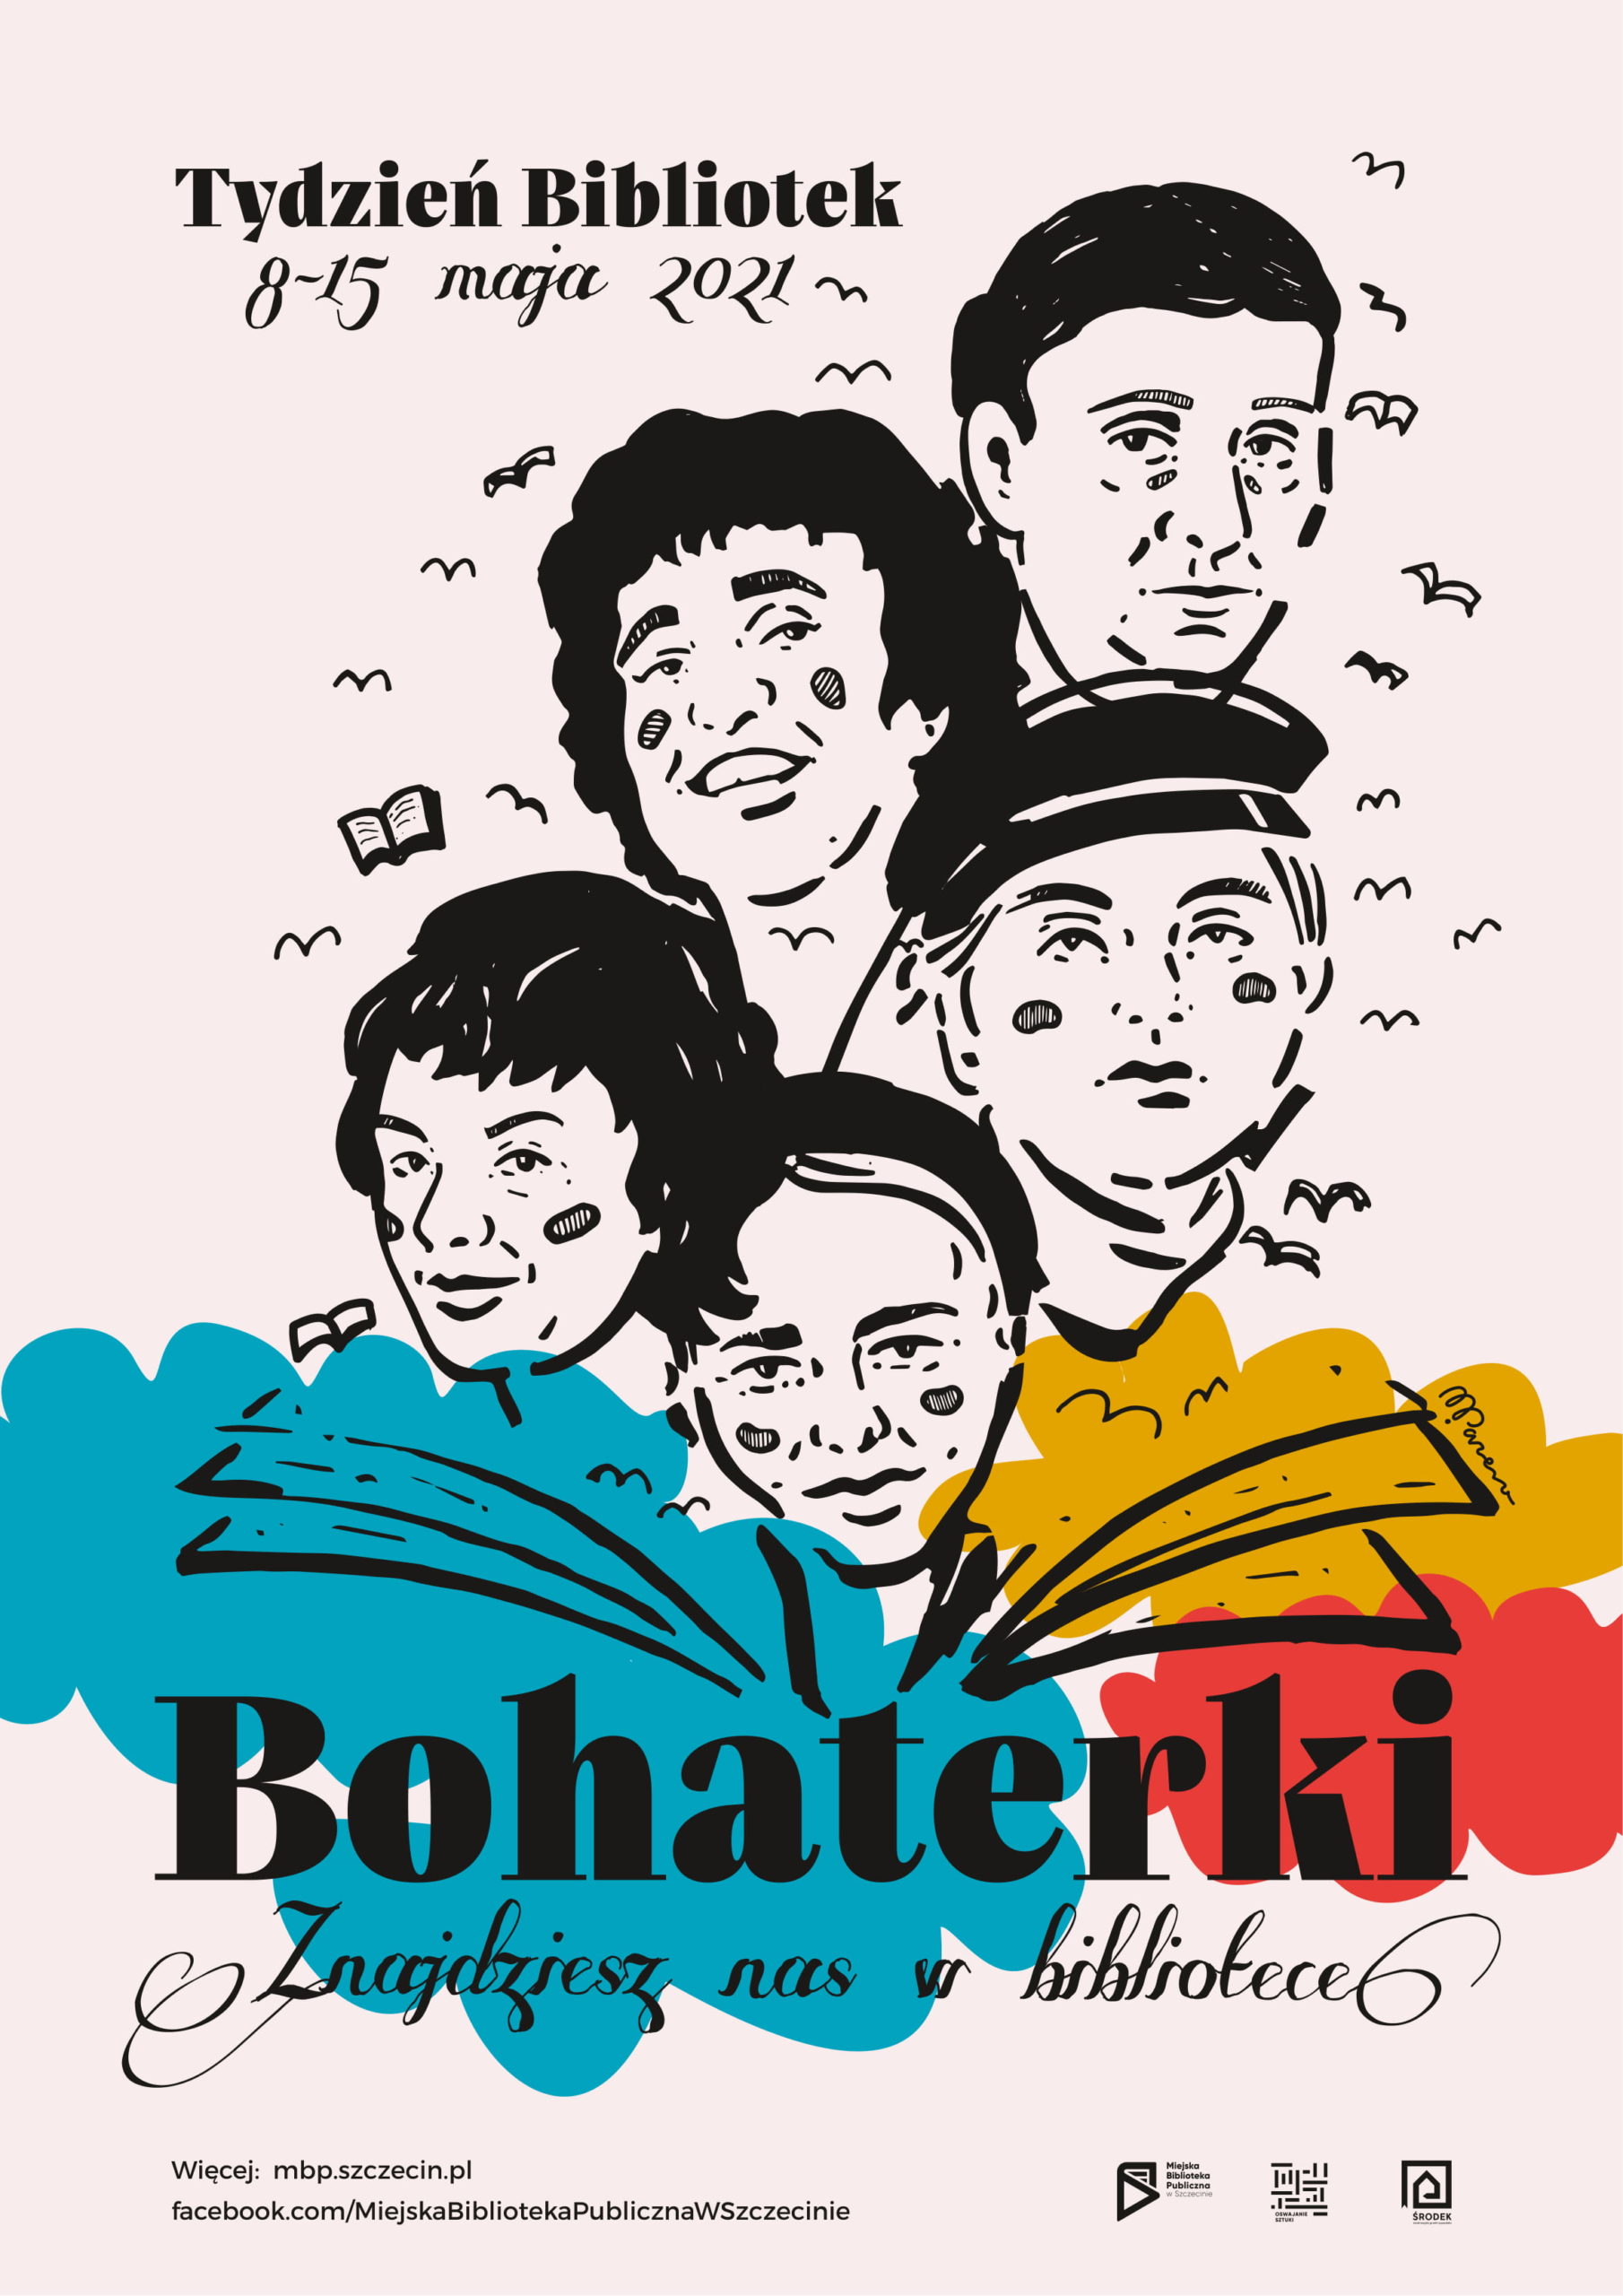 Plakat-ilustracja promujący Tydzień Bibliotek 2021 w Szczecinie. Cztery kobiety wychodzą z książki, otaczają je ptaki i kolory. Dodatkowo podpis: "Bohaterki. Znajdziesz nas w bibliotece"